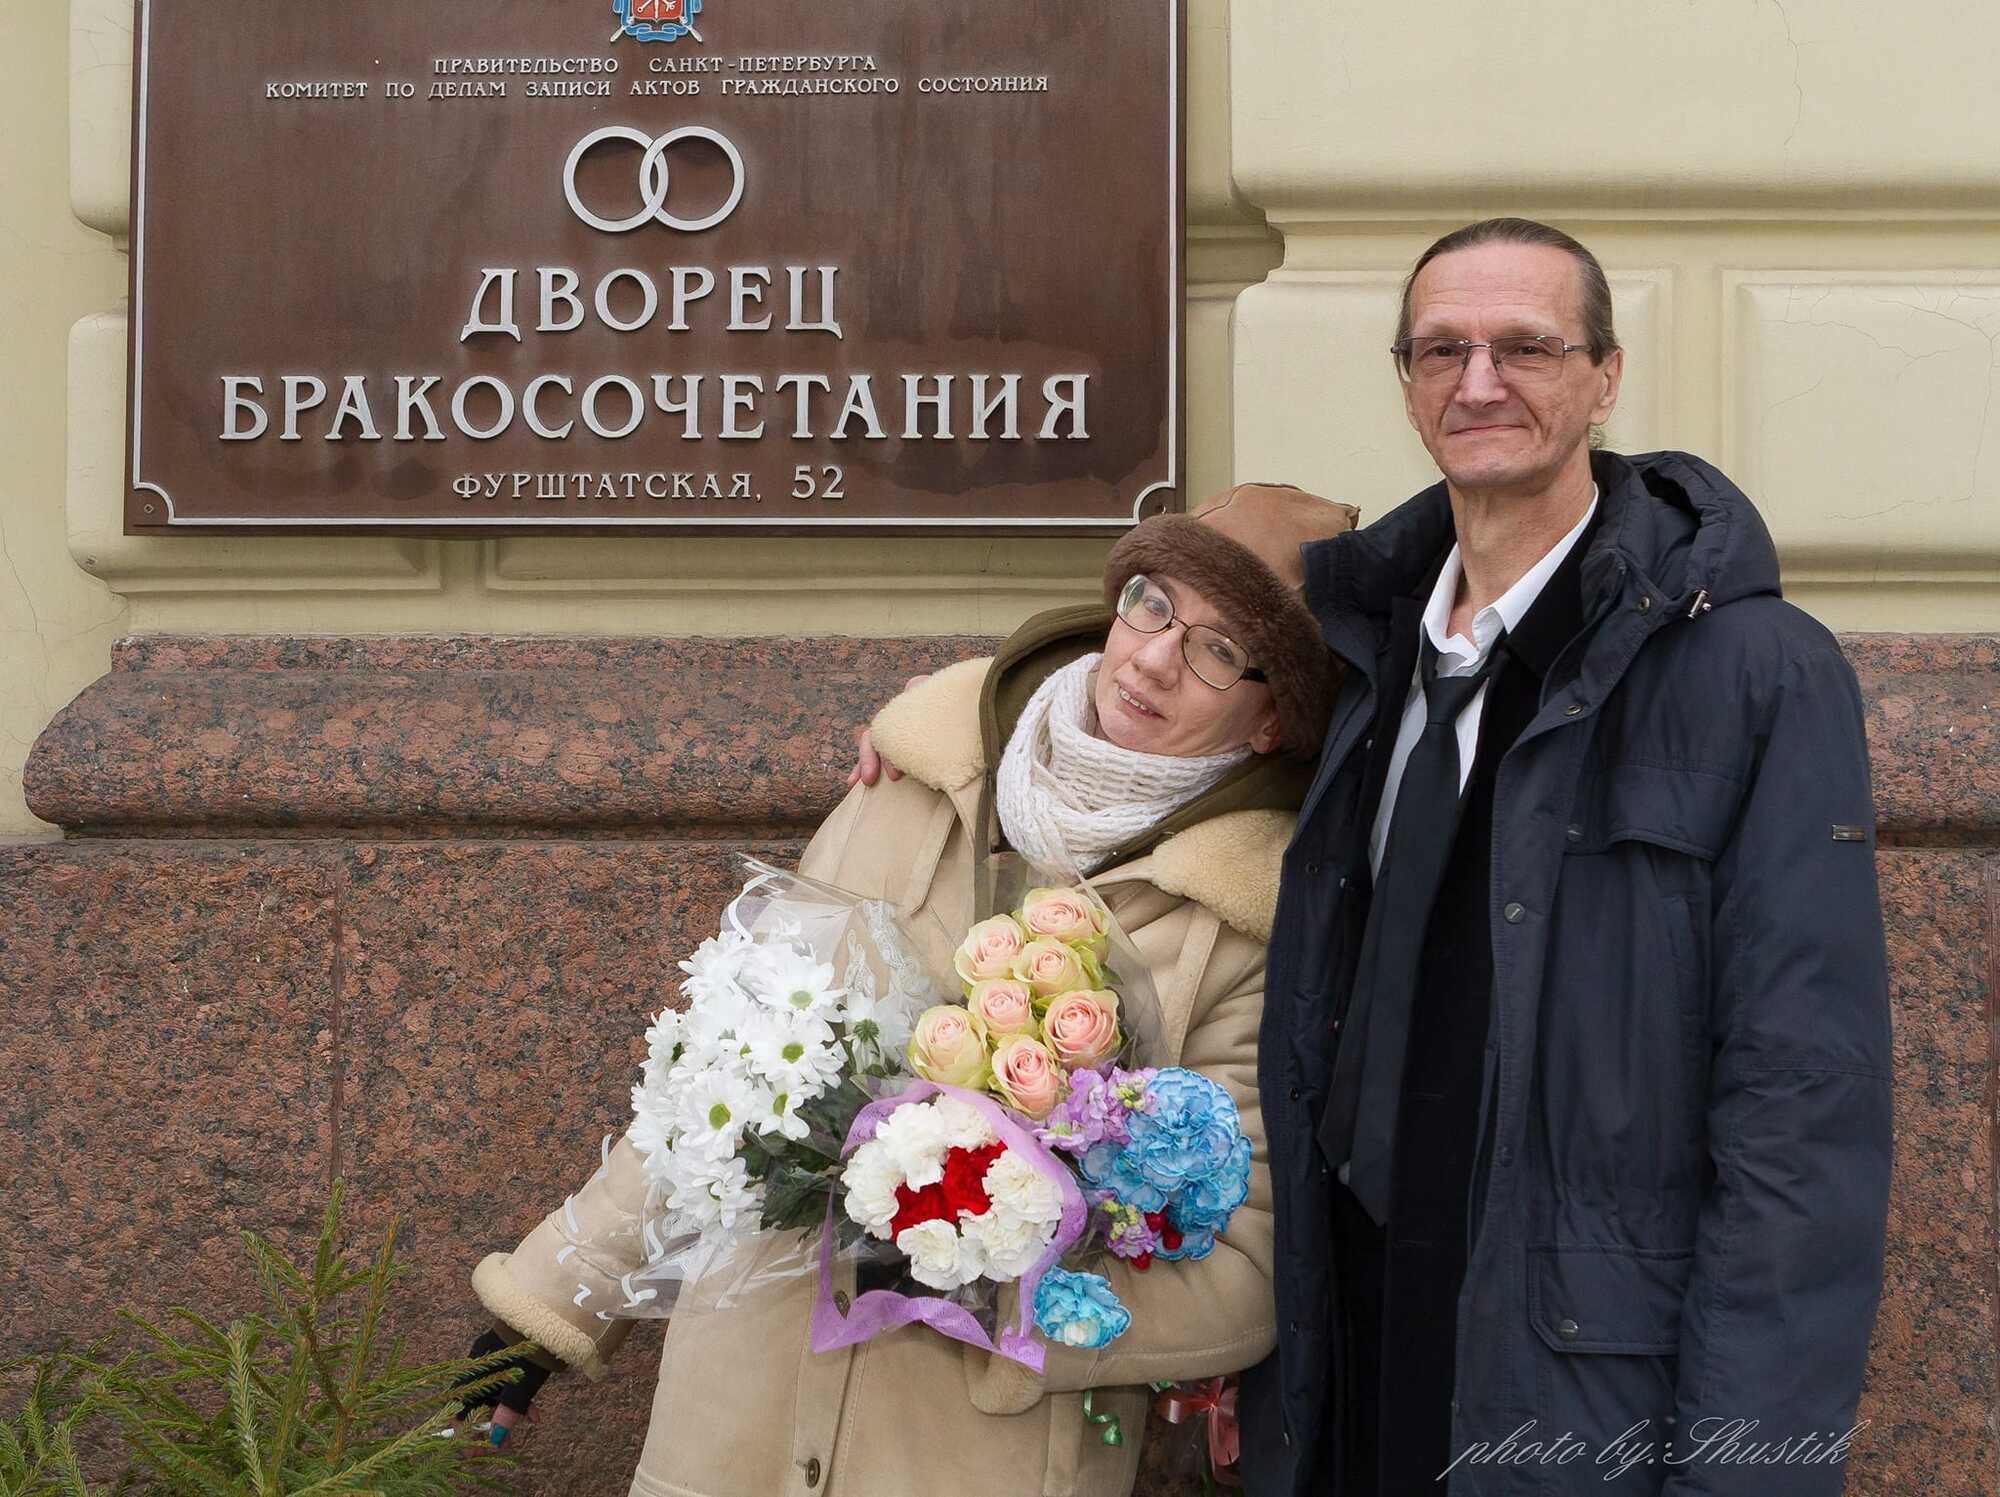 Євгенія Більченко узаконила шлюб зі своїм чоловіком у РФ